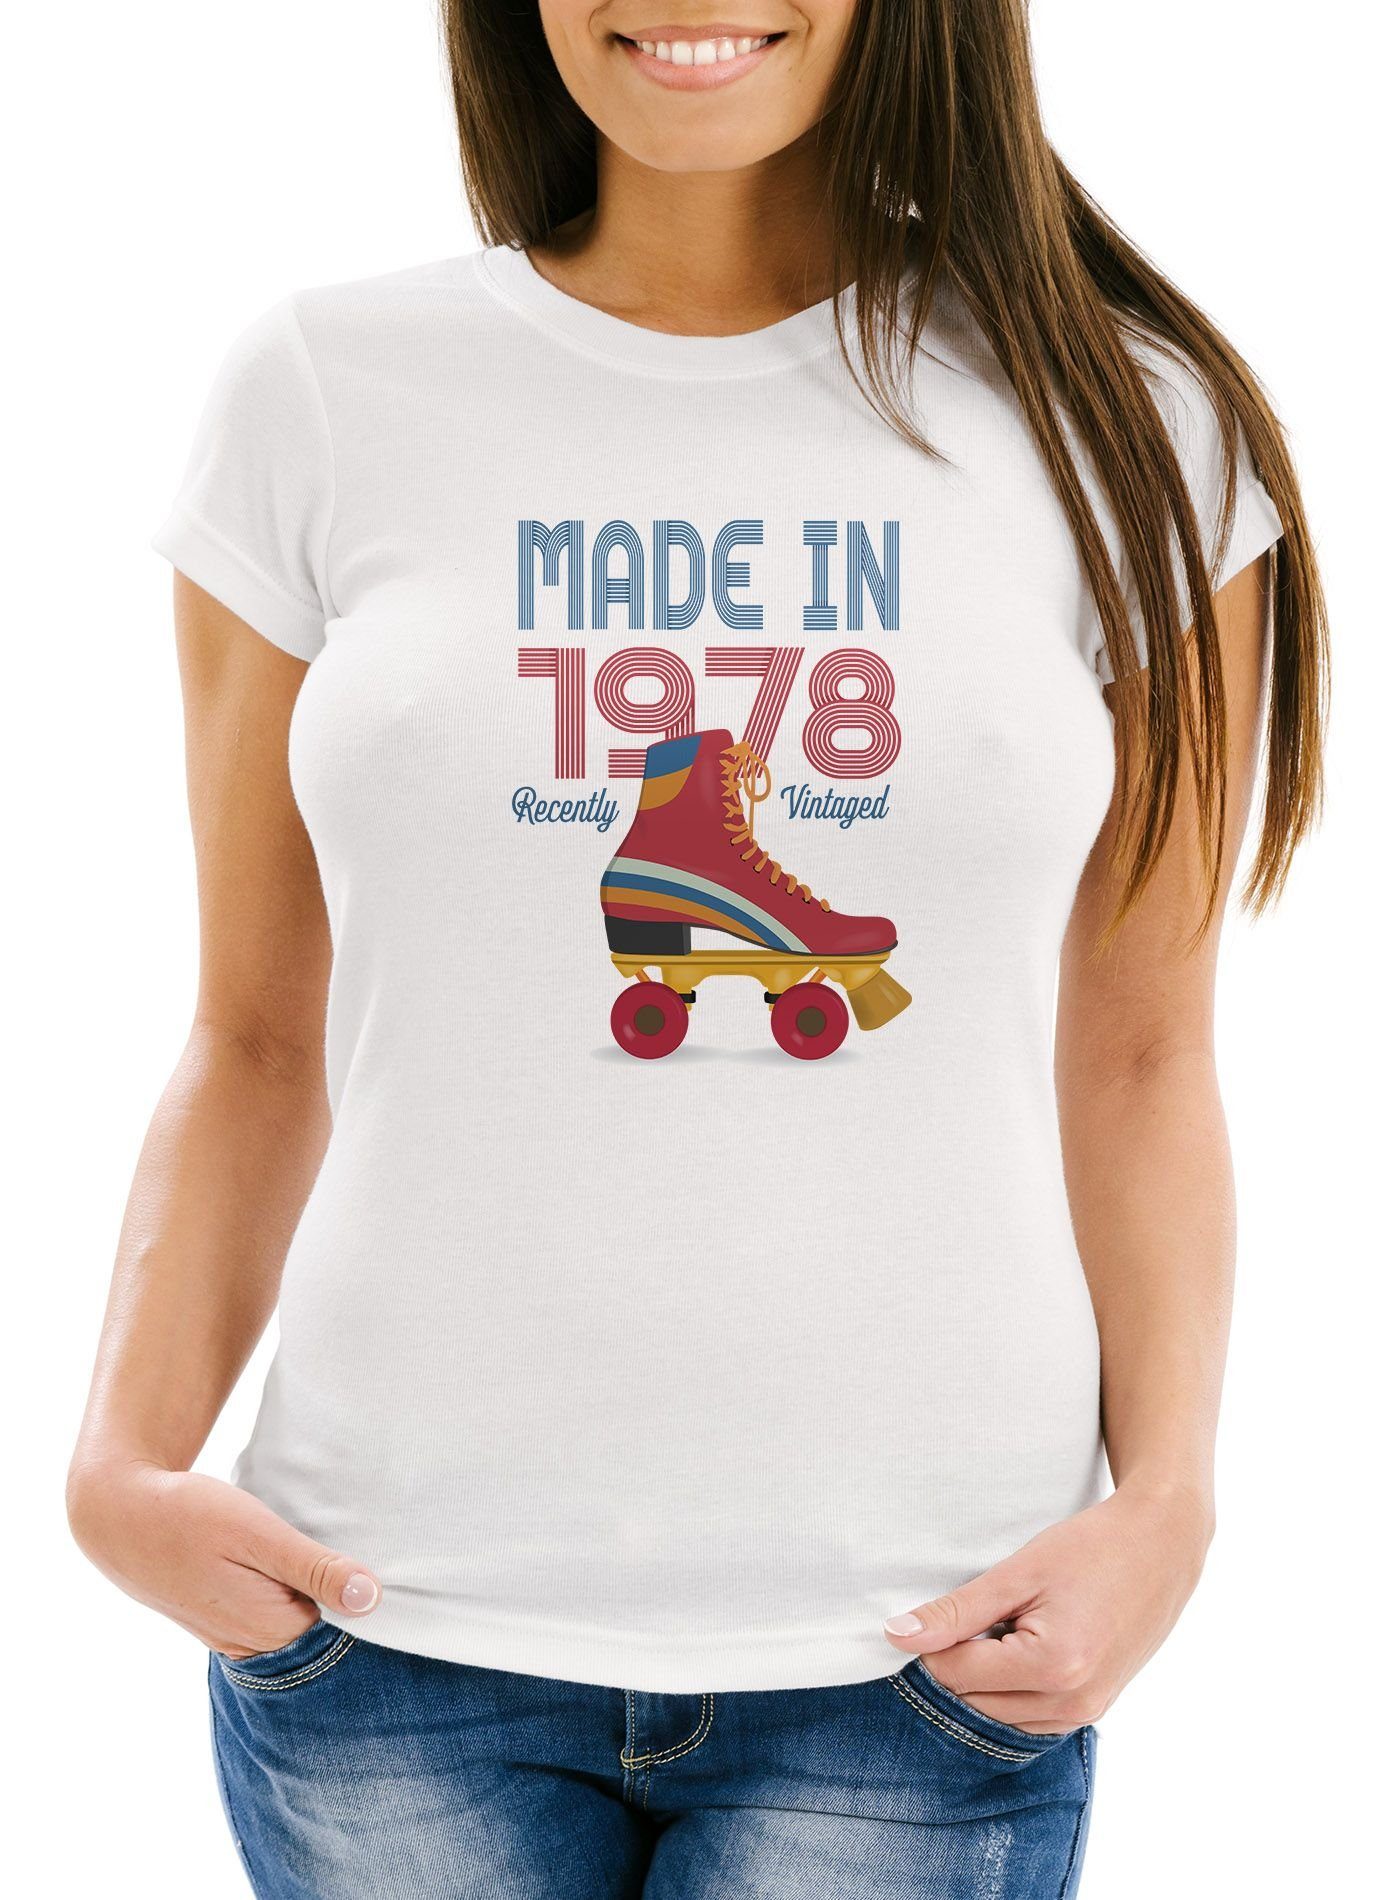 MoonWorks Moonworks® Slim Geschenk-Shirt Damen Fit 70er 1978 Vintage T-Shirt Retro Jahre Print-Shirt mit Print weiß Geburtstag Siebziger